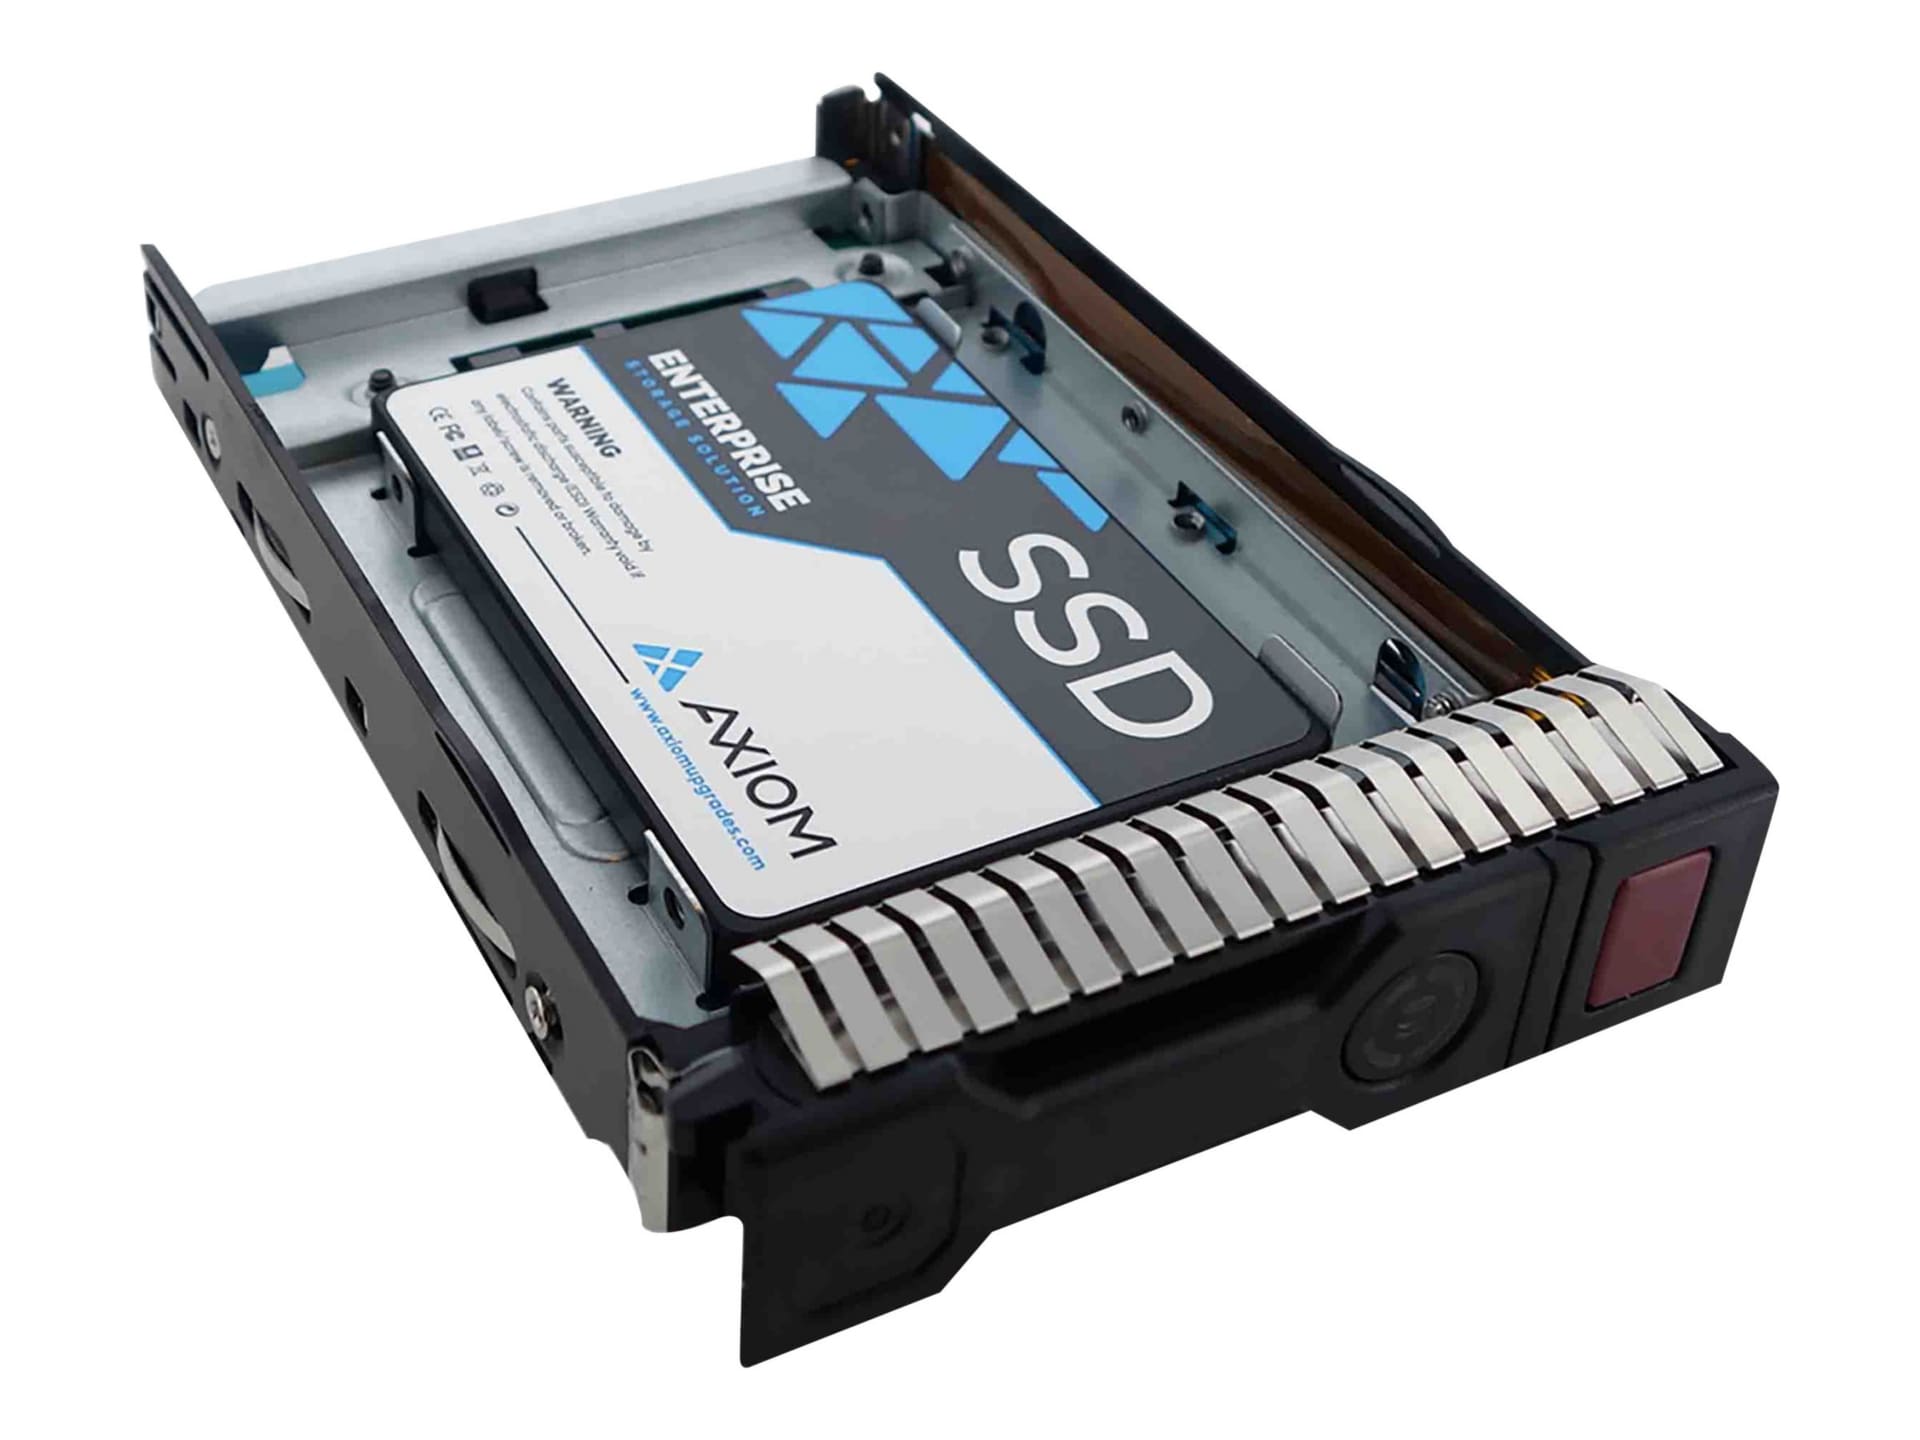 Axiom Enterprise - hard drive - 6 TB - SATA 6Gb/s